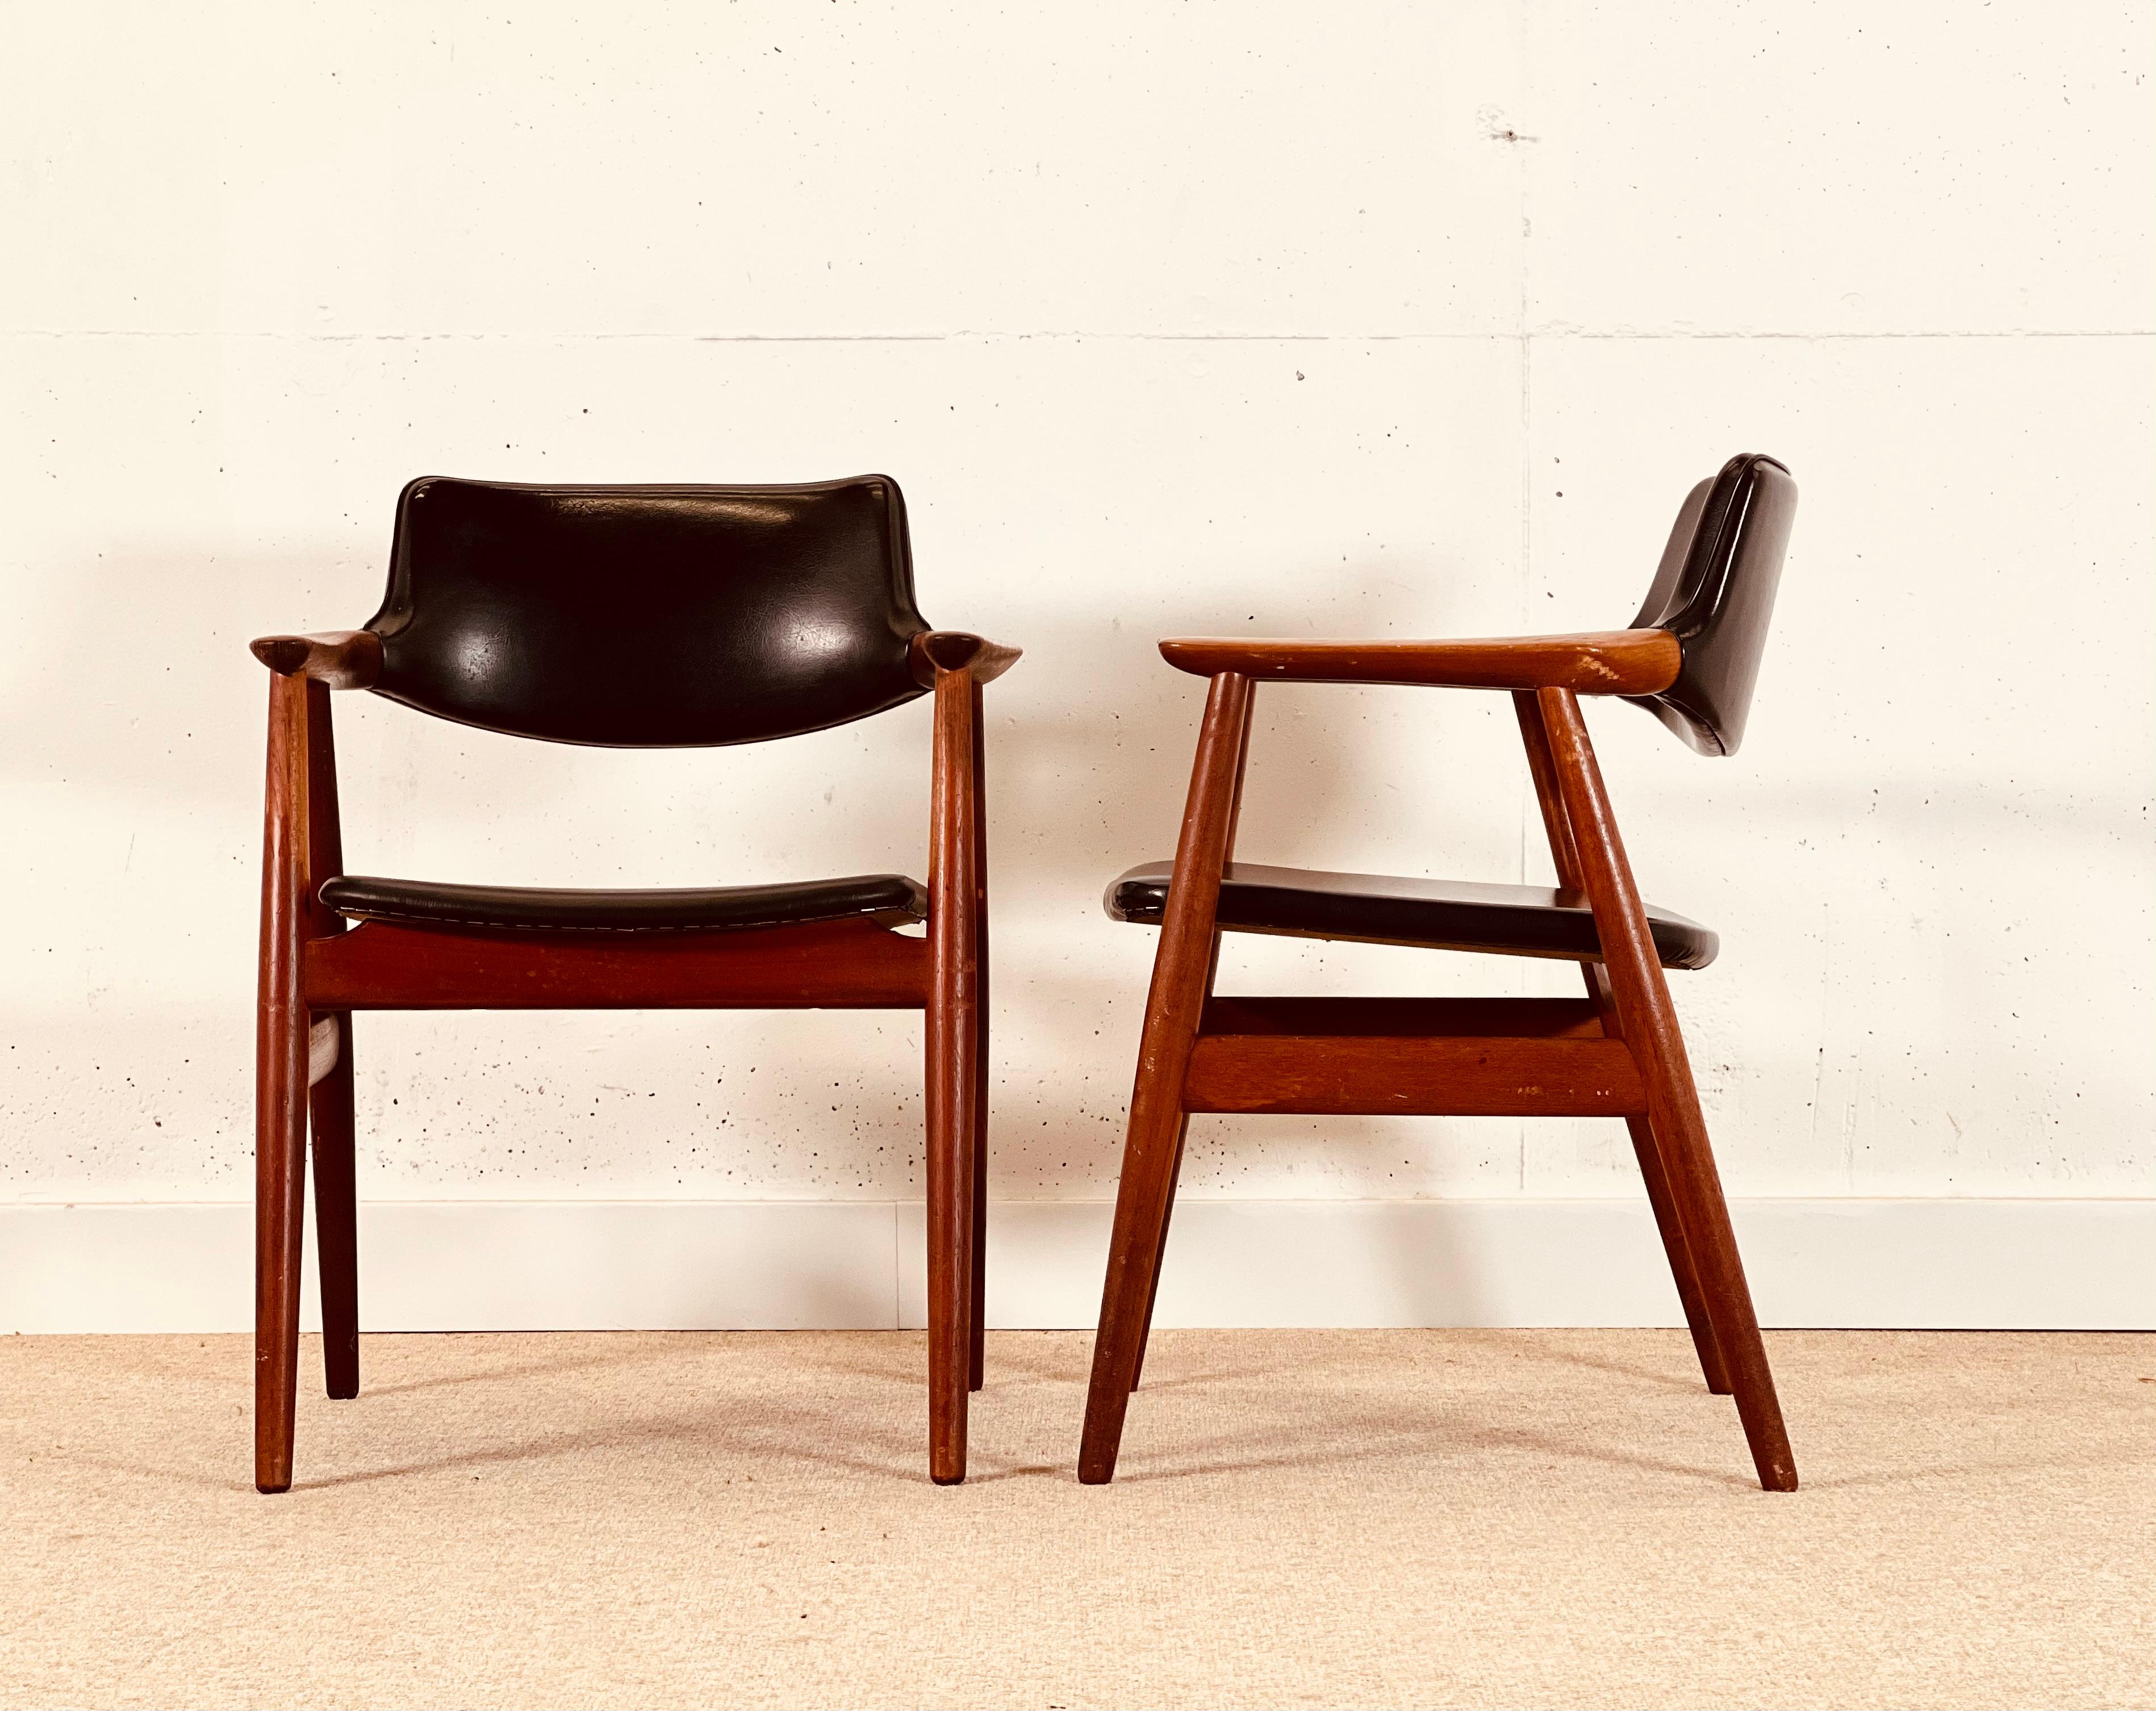 NO AGE Eriksen a conçu un ensemble de quatre chaises au Danemark dans les années 60. Il s'agit de la chaise de salle à manger modèle Gm11.
Les chaises sont en bois de teck massif avec un beau design qui maintient l'accoudoir suspendu dans l'air. Les